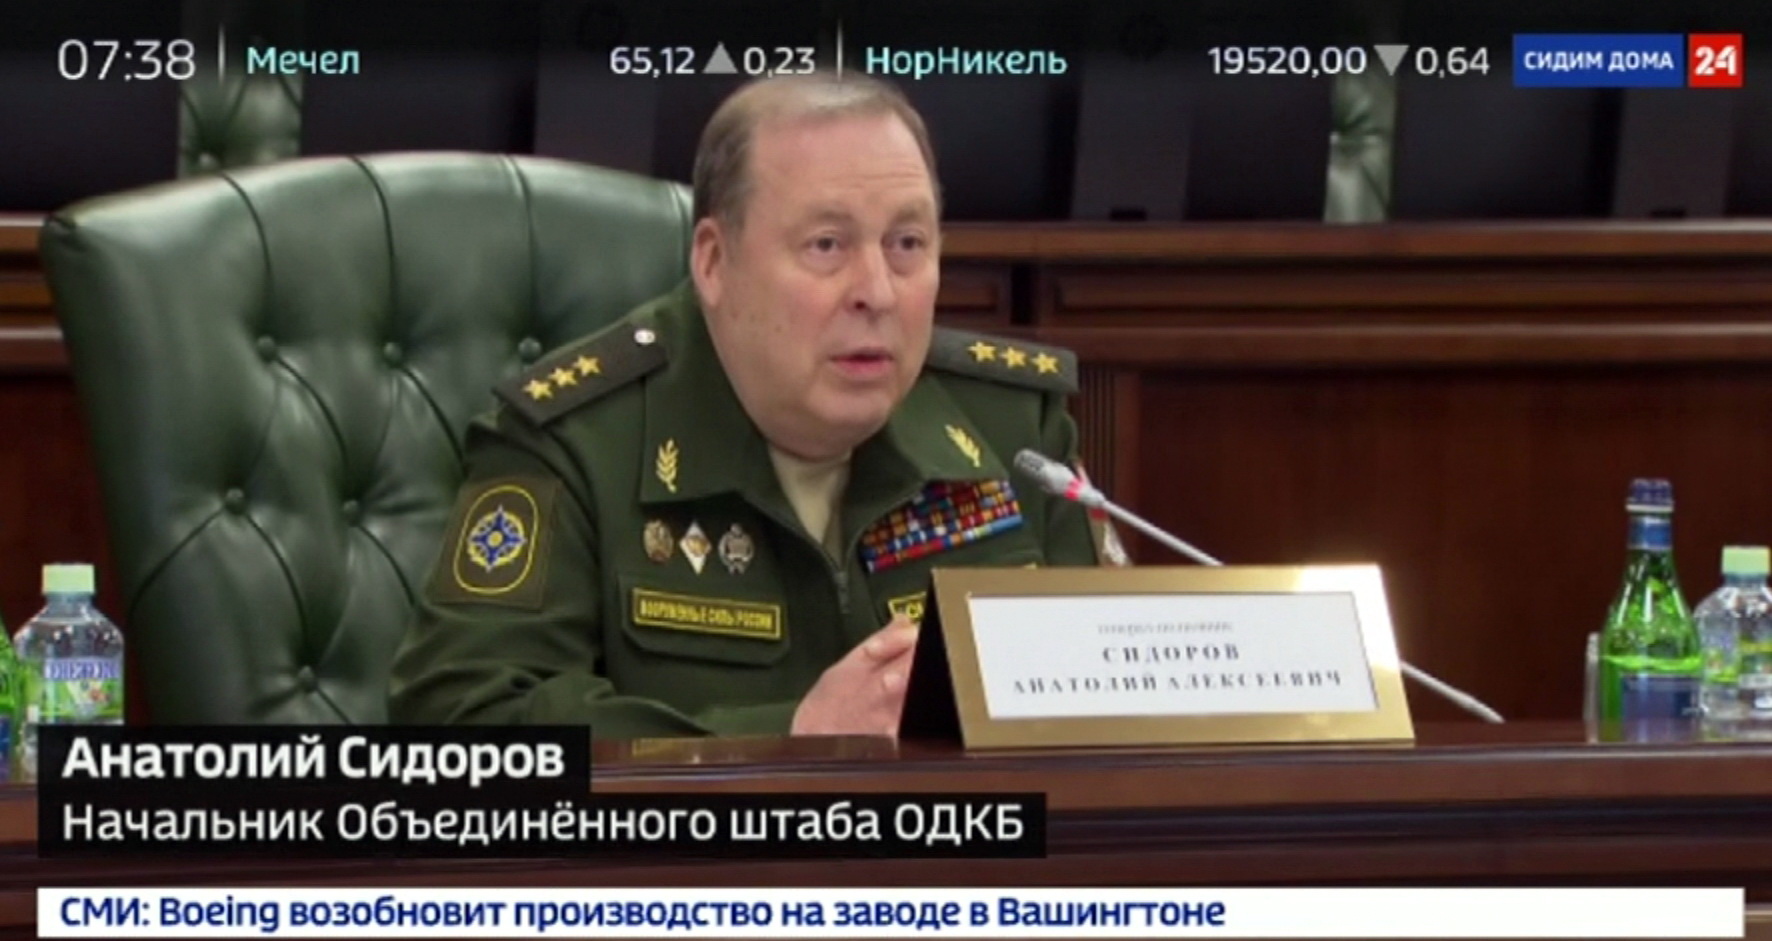 Сюжет телеканала «Россия 24»: Ведущие военные врачи стран ОДКБ обсудили борьбу с пандемией